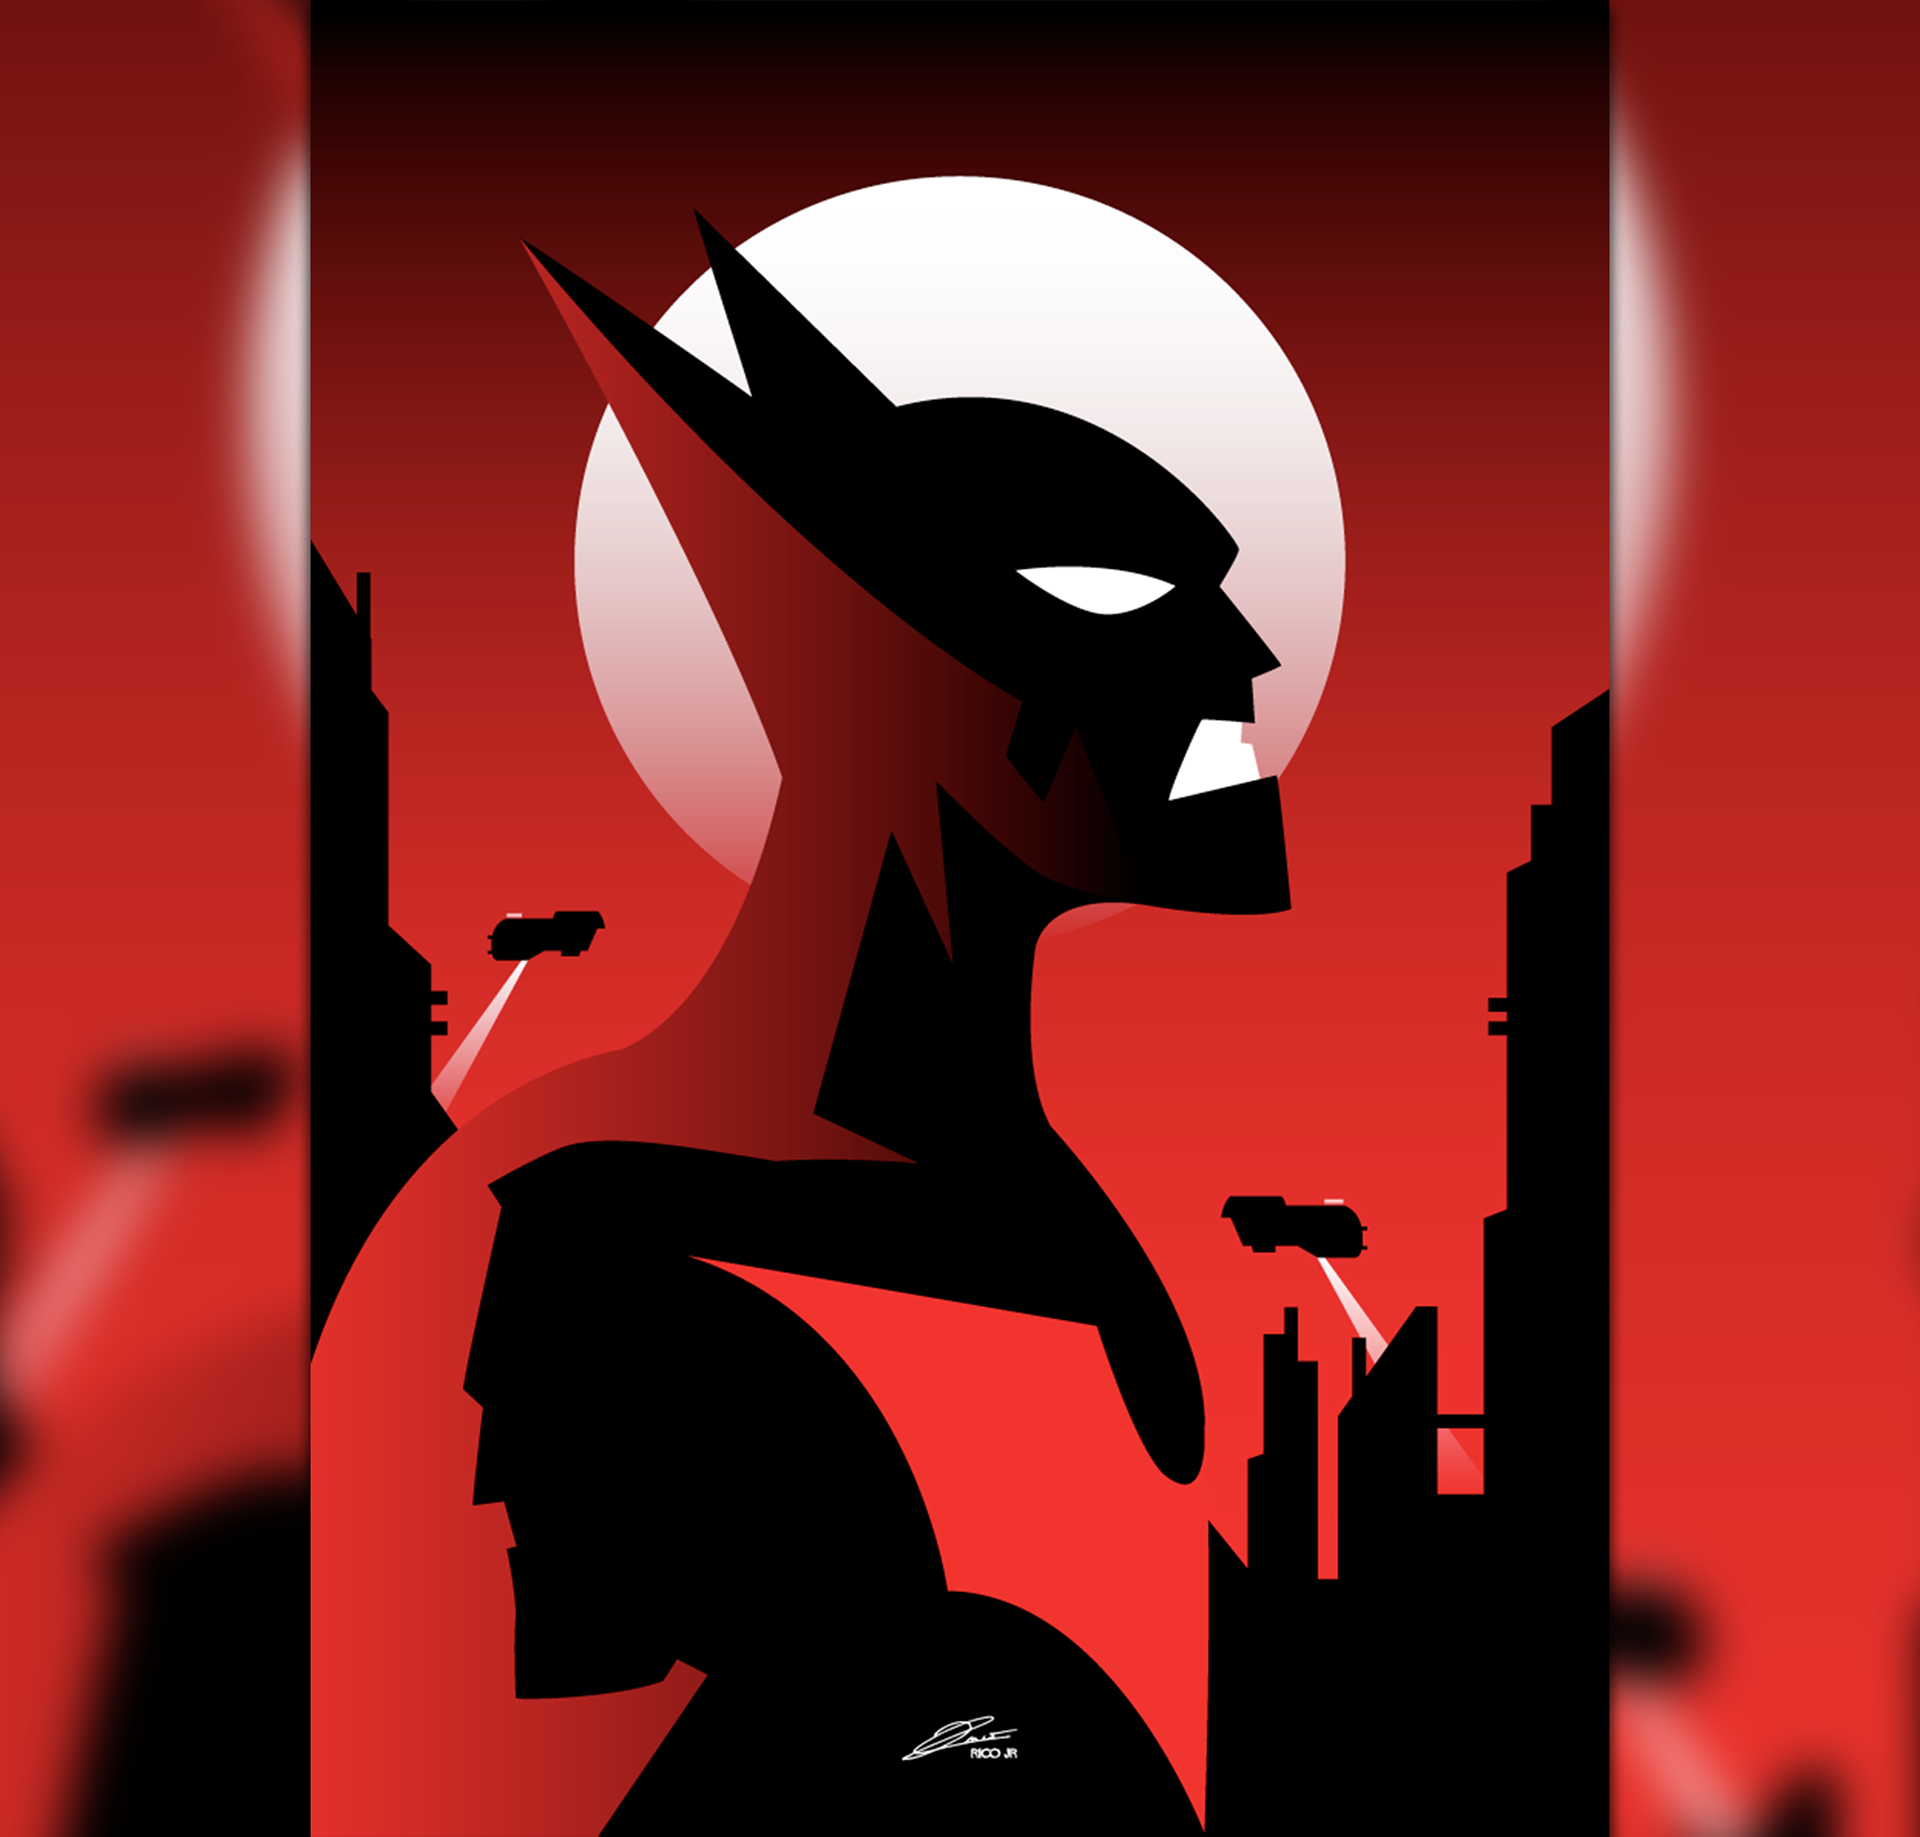 BATMAN BEYOND Poster Art | Behance